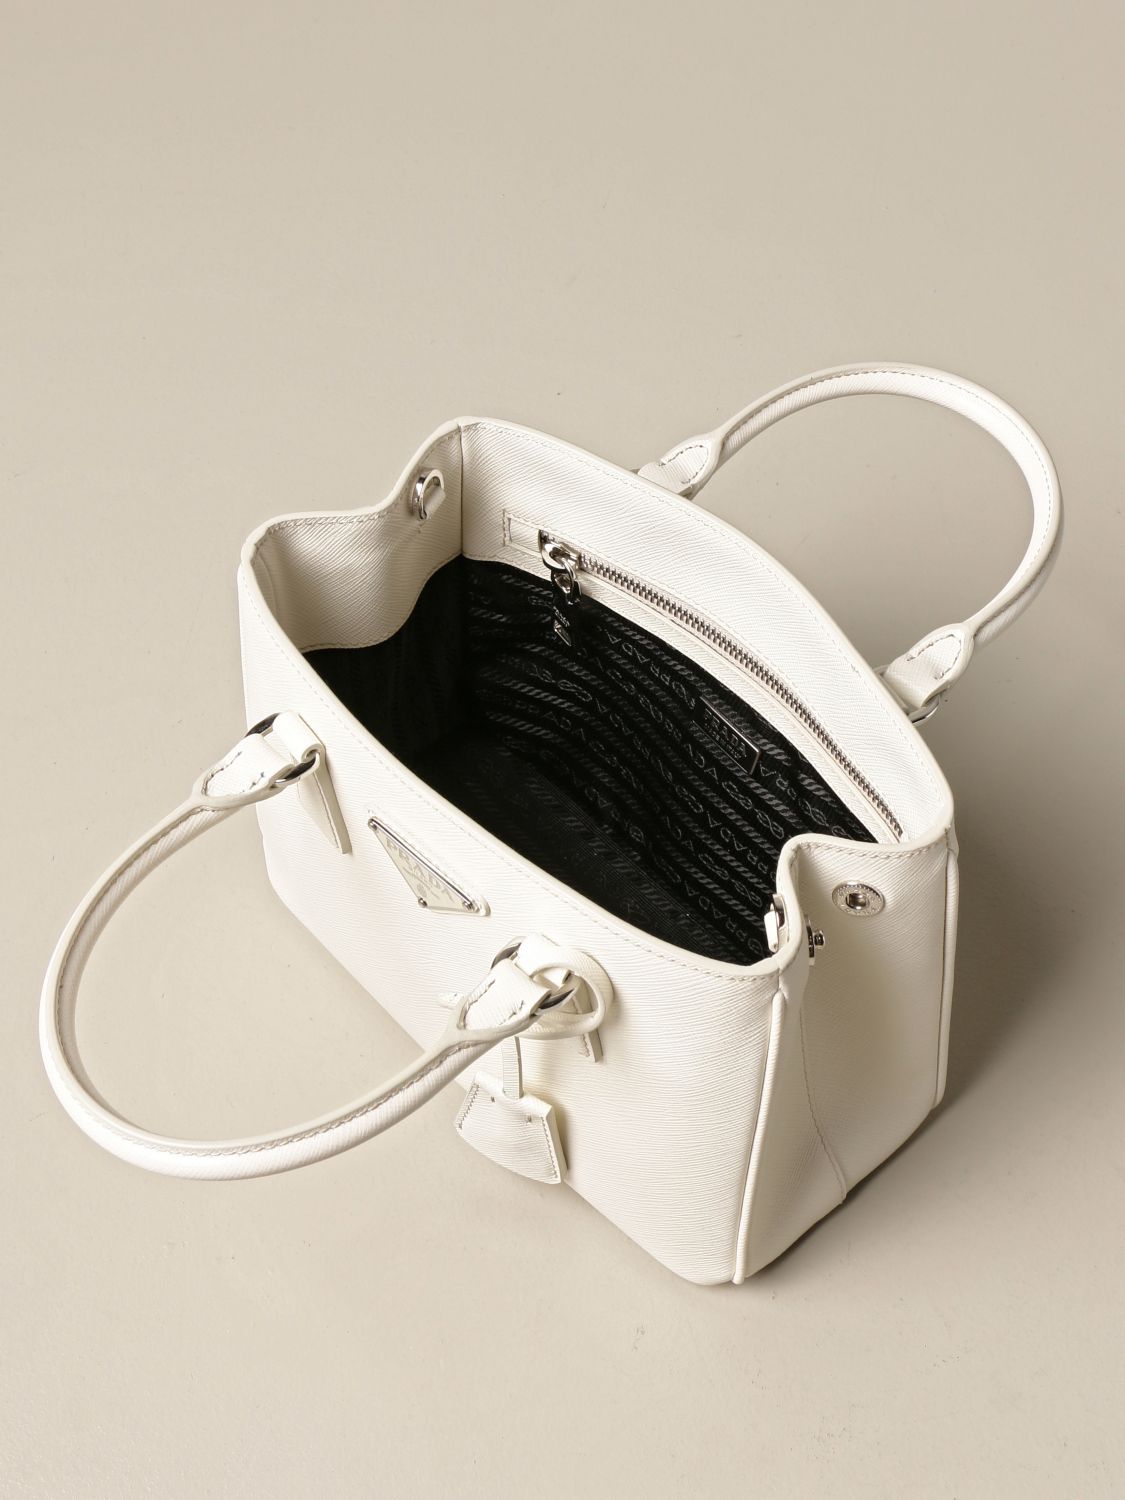 PRADA: Damen Handtasche - Beige  Prada Handtasche 1BA296 V41 NZV online  auf